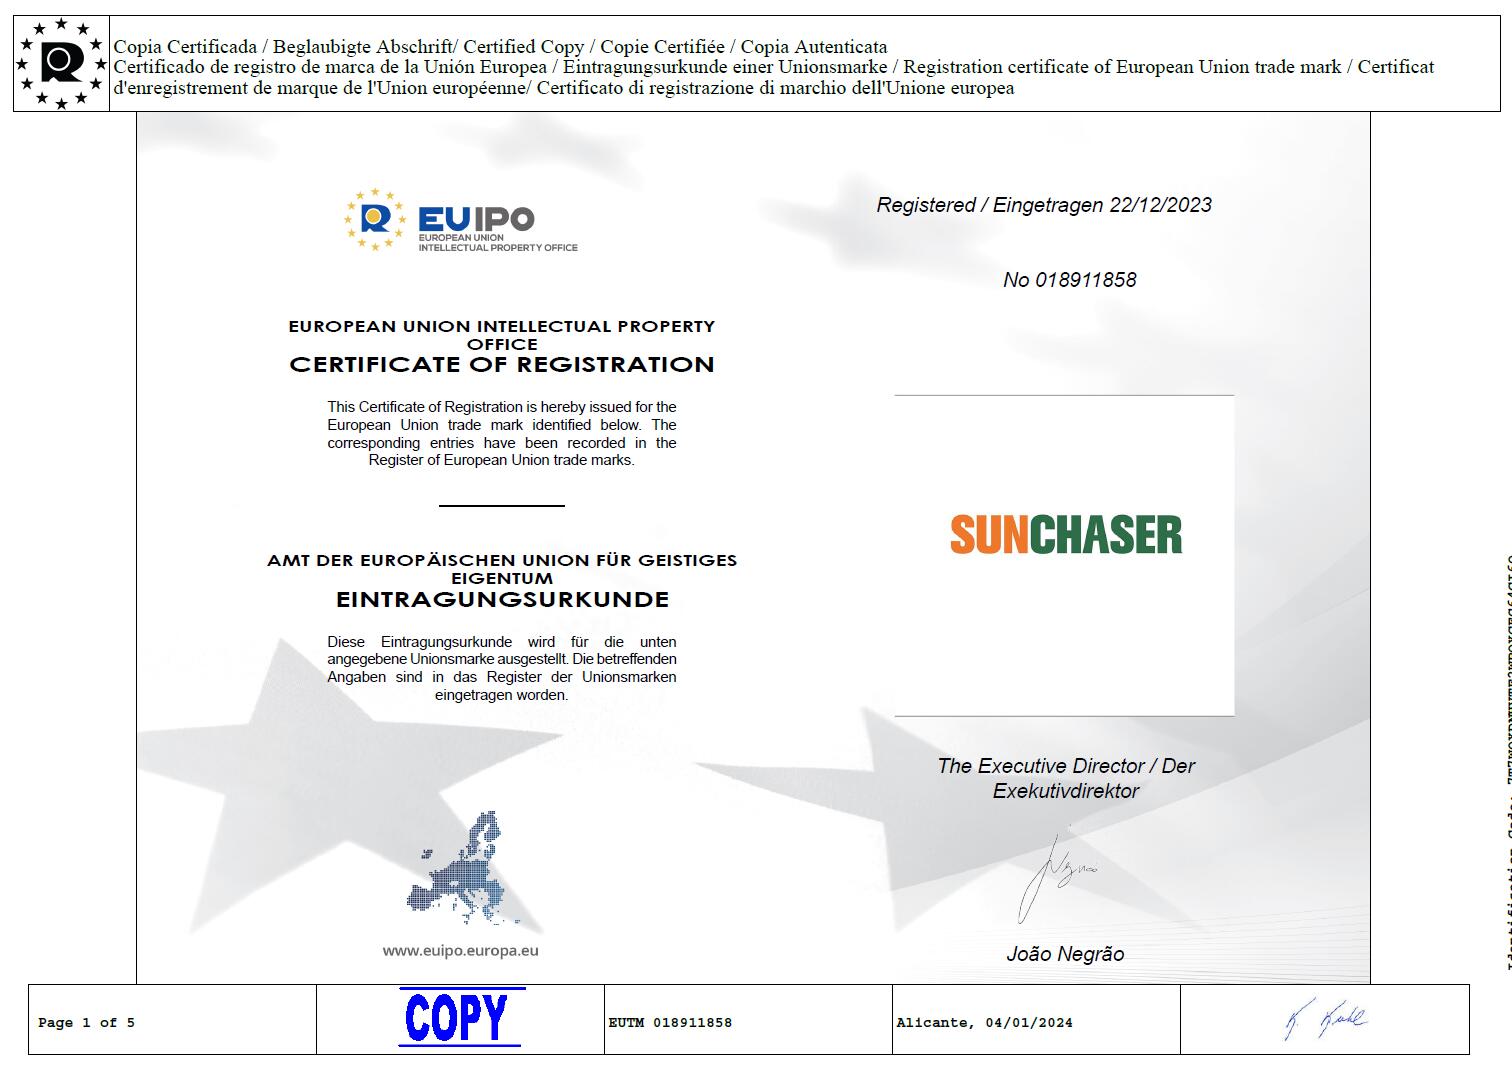 سجلت مجموعة تيانتيك للطاقة الشمسية بنجاح العلامة التجارية SUNCHASER في أوروبا.